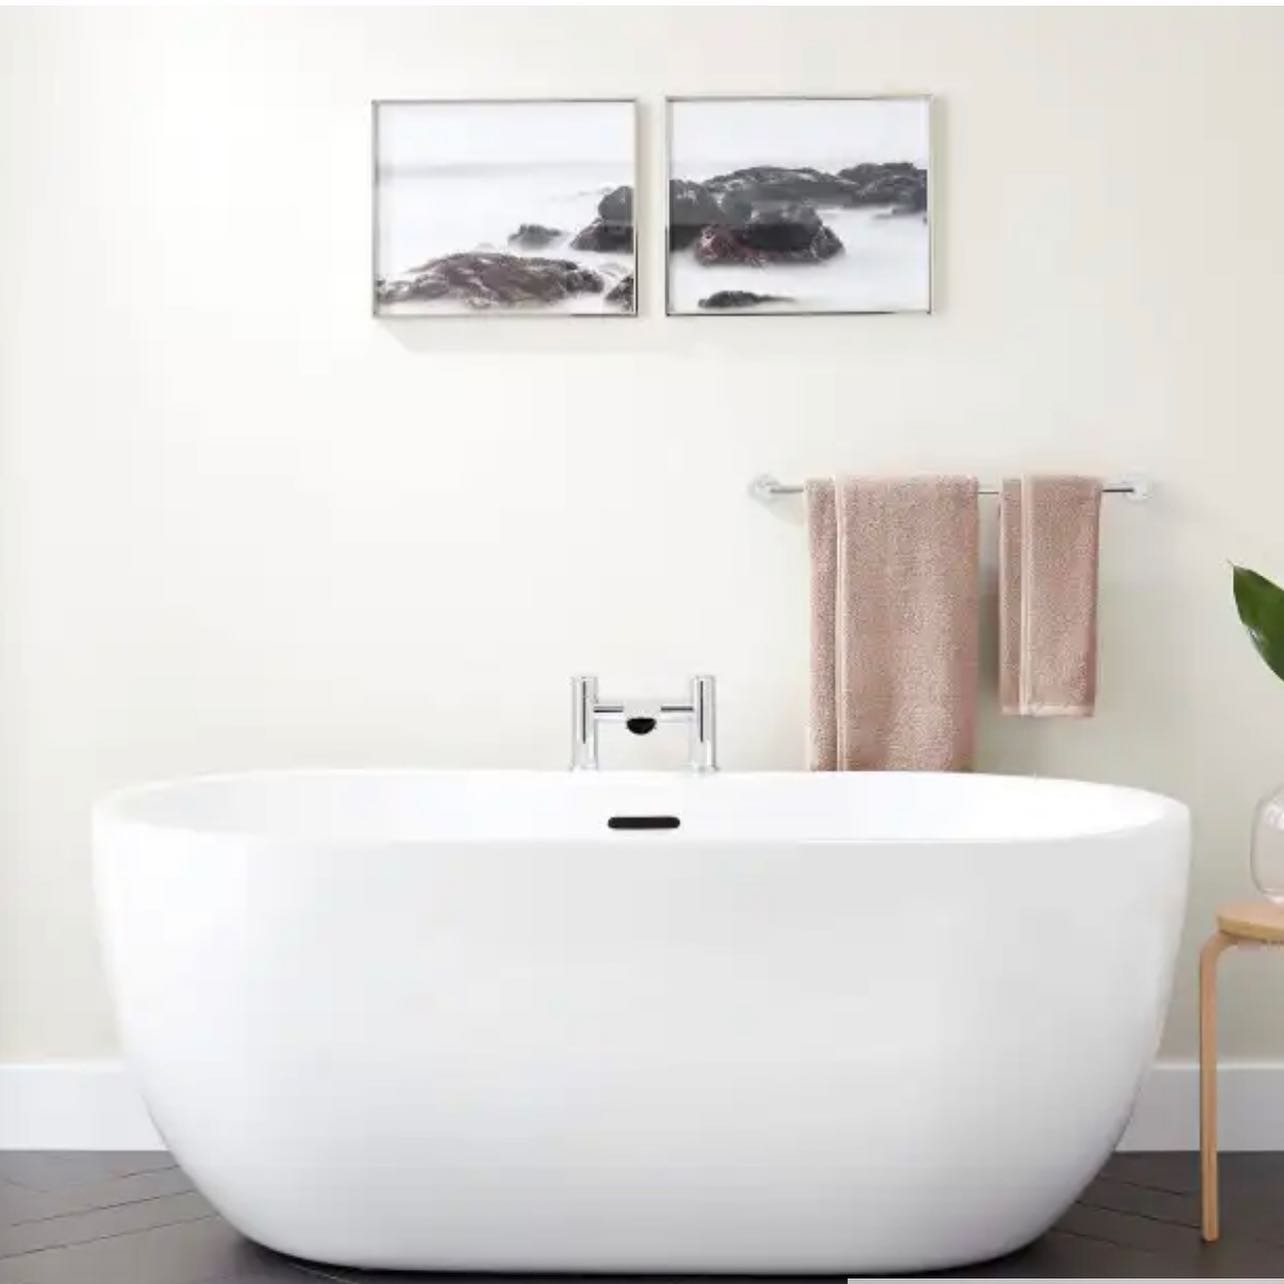 65" Boyce Acrylic Freestanding Tub